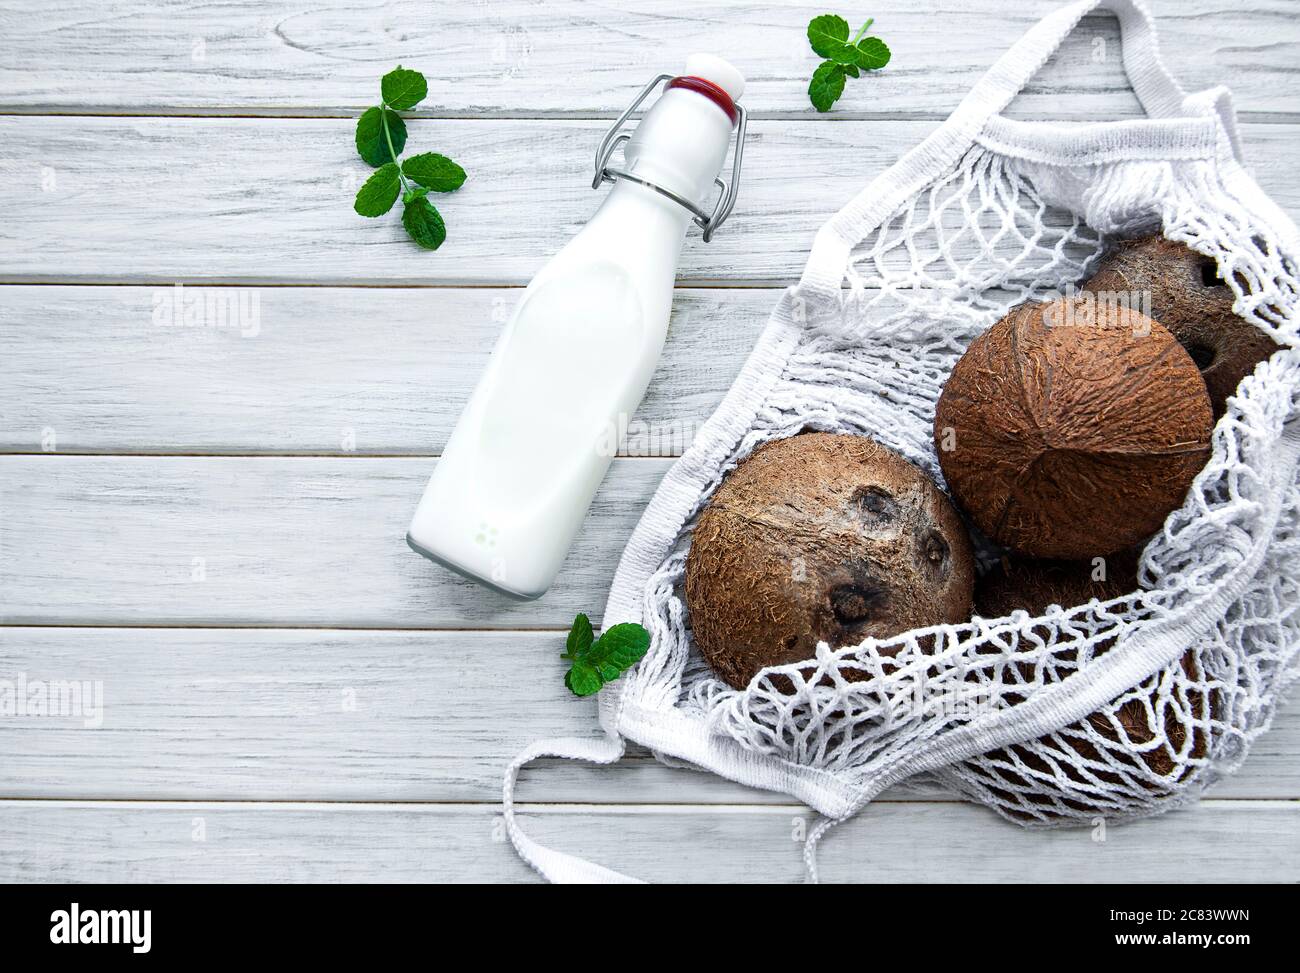 Flasche Kokosmilch und Kokosnüsse in einem Öko-Netzbeutel auf einem  Holztisch Stockfotografie - Alamy